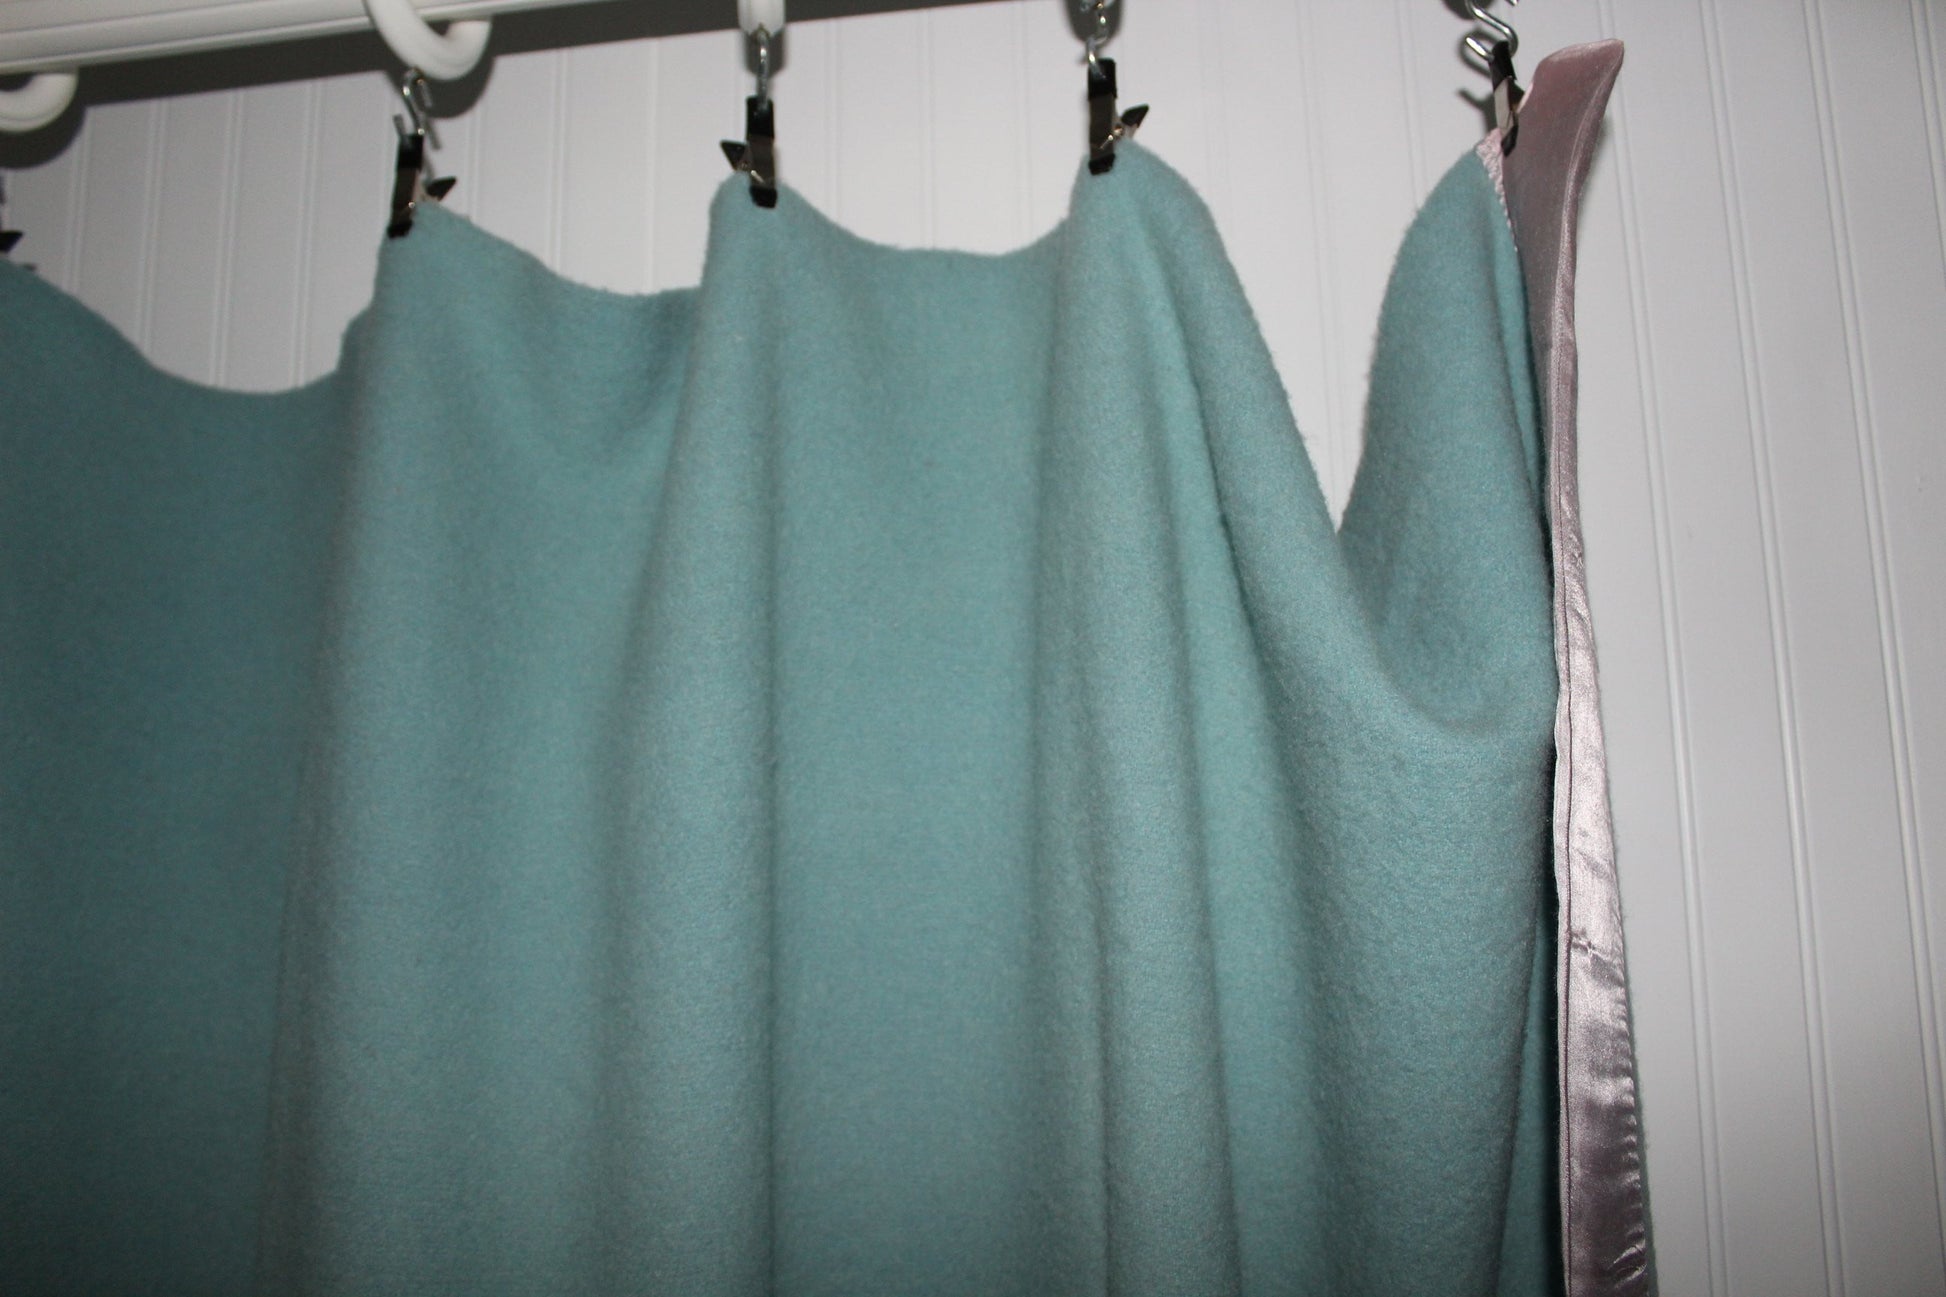 Wool Blanket 1950s Vintage Blue Wide Satin Binding 69" X 83" good color